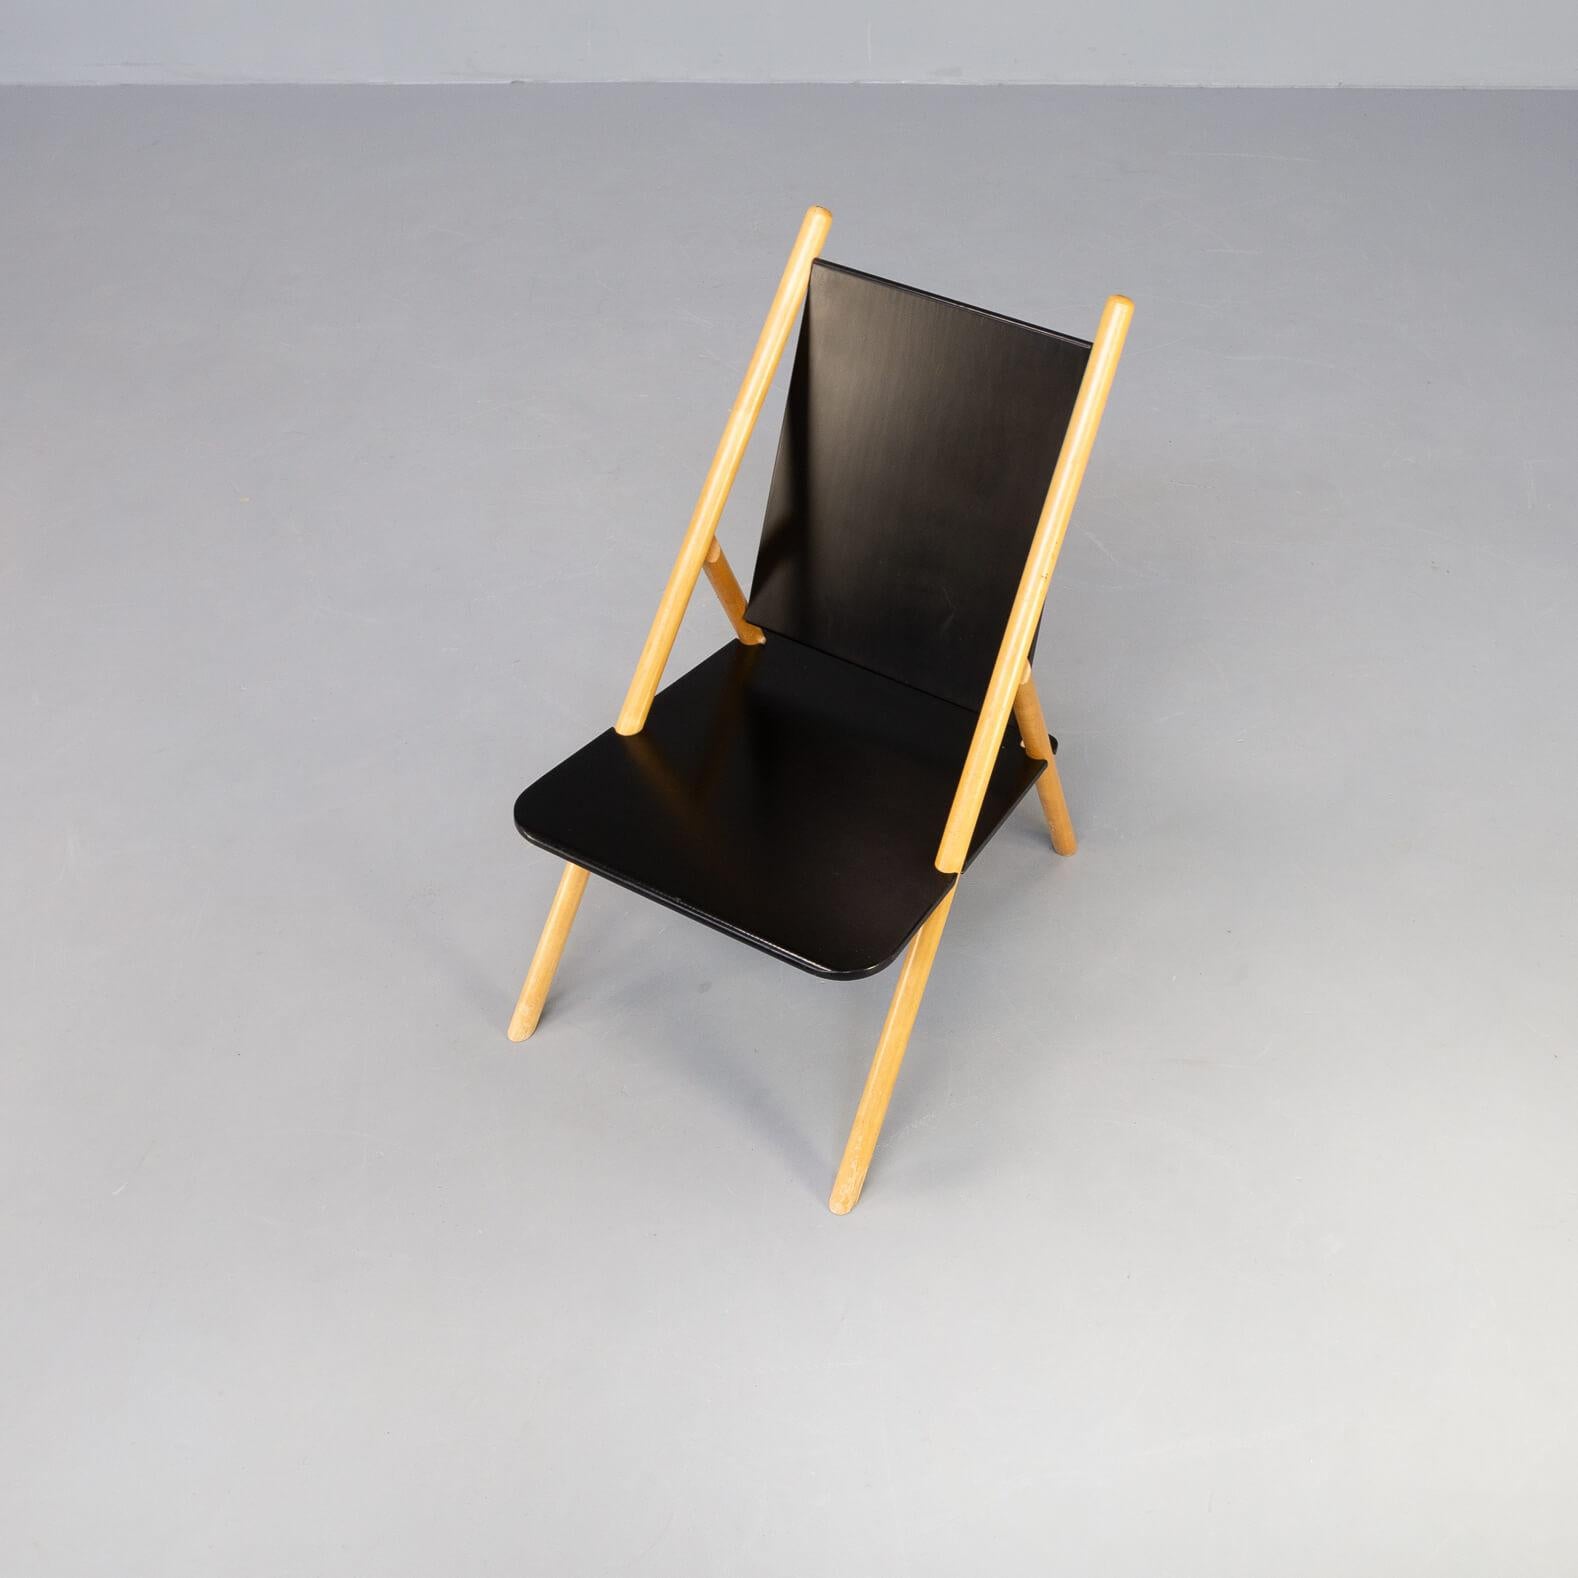 70s Yrjo Wihermheimo & Rudi Merz ‘Pinna’ Chair for Korkeakosko OY Set/2 For Sale 2